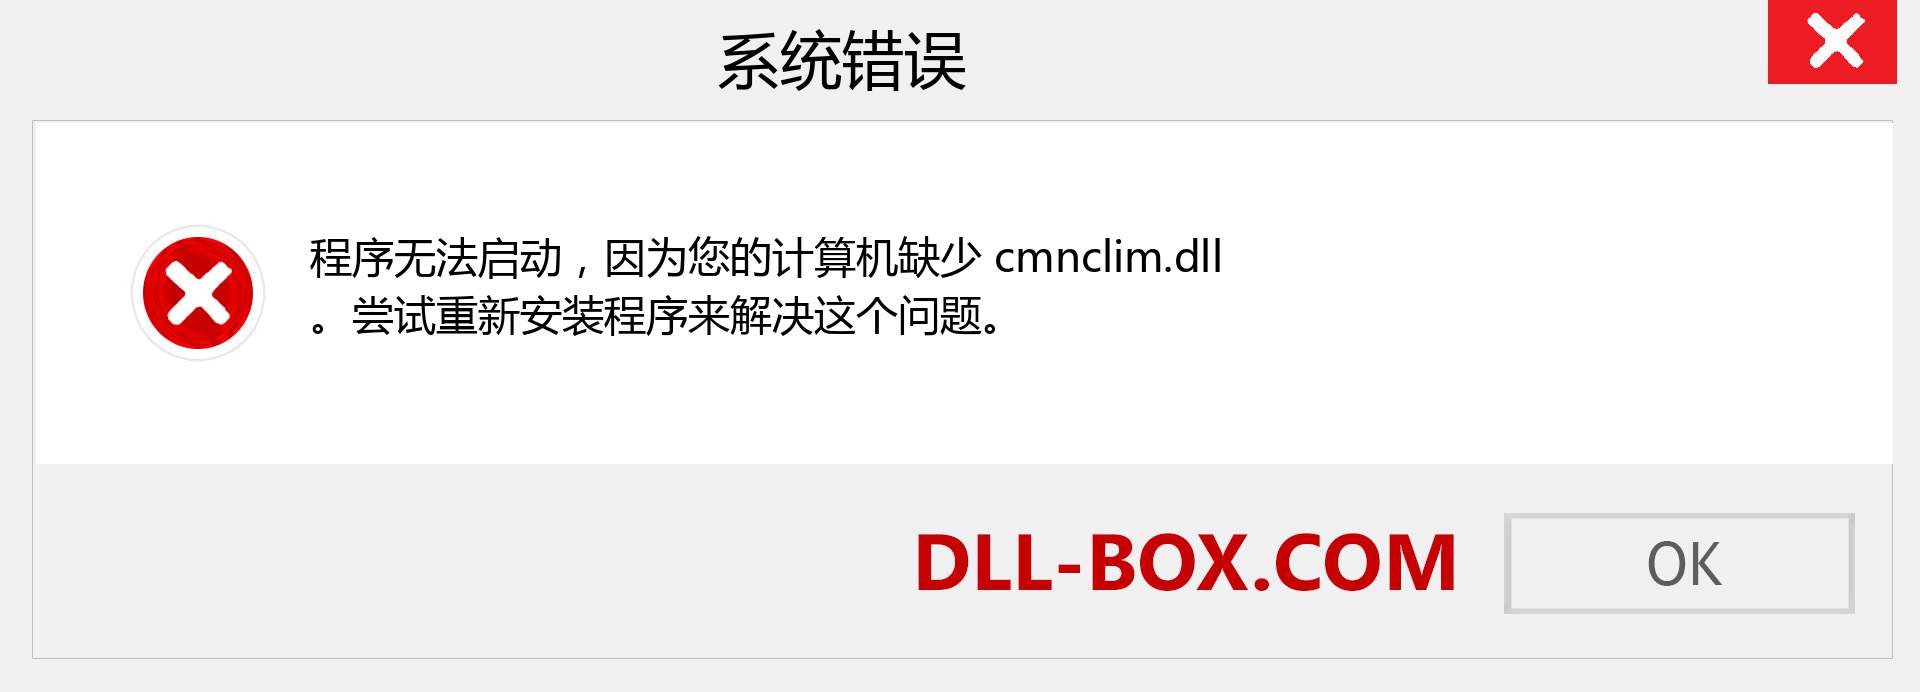 cmnclim.dll 文件丢失？。 适用于 Windows 7、8、10 的下载 - 修复 Windows、照片、图像上的 cmnclim dll 丢失错误